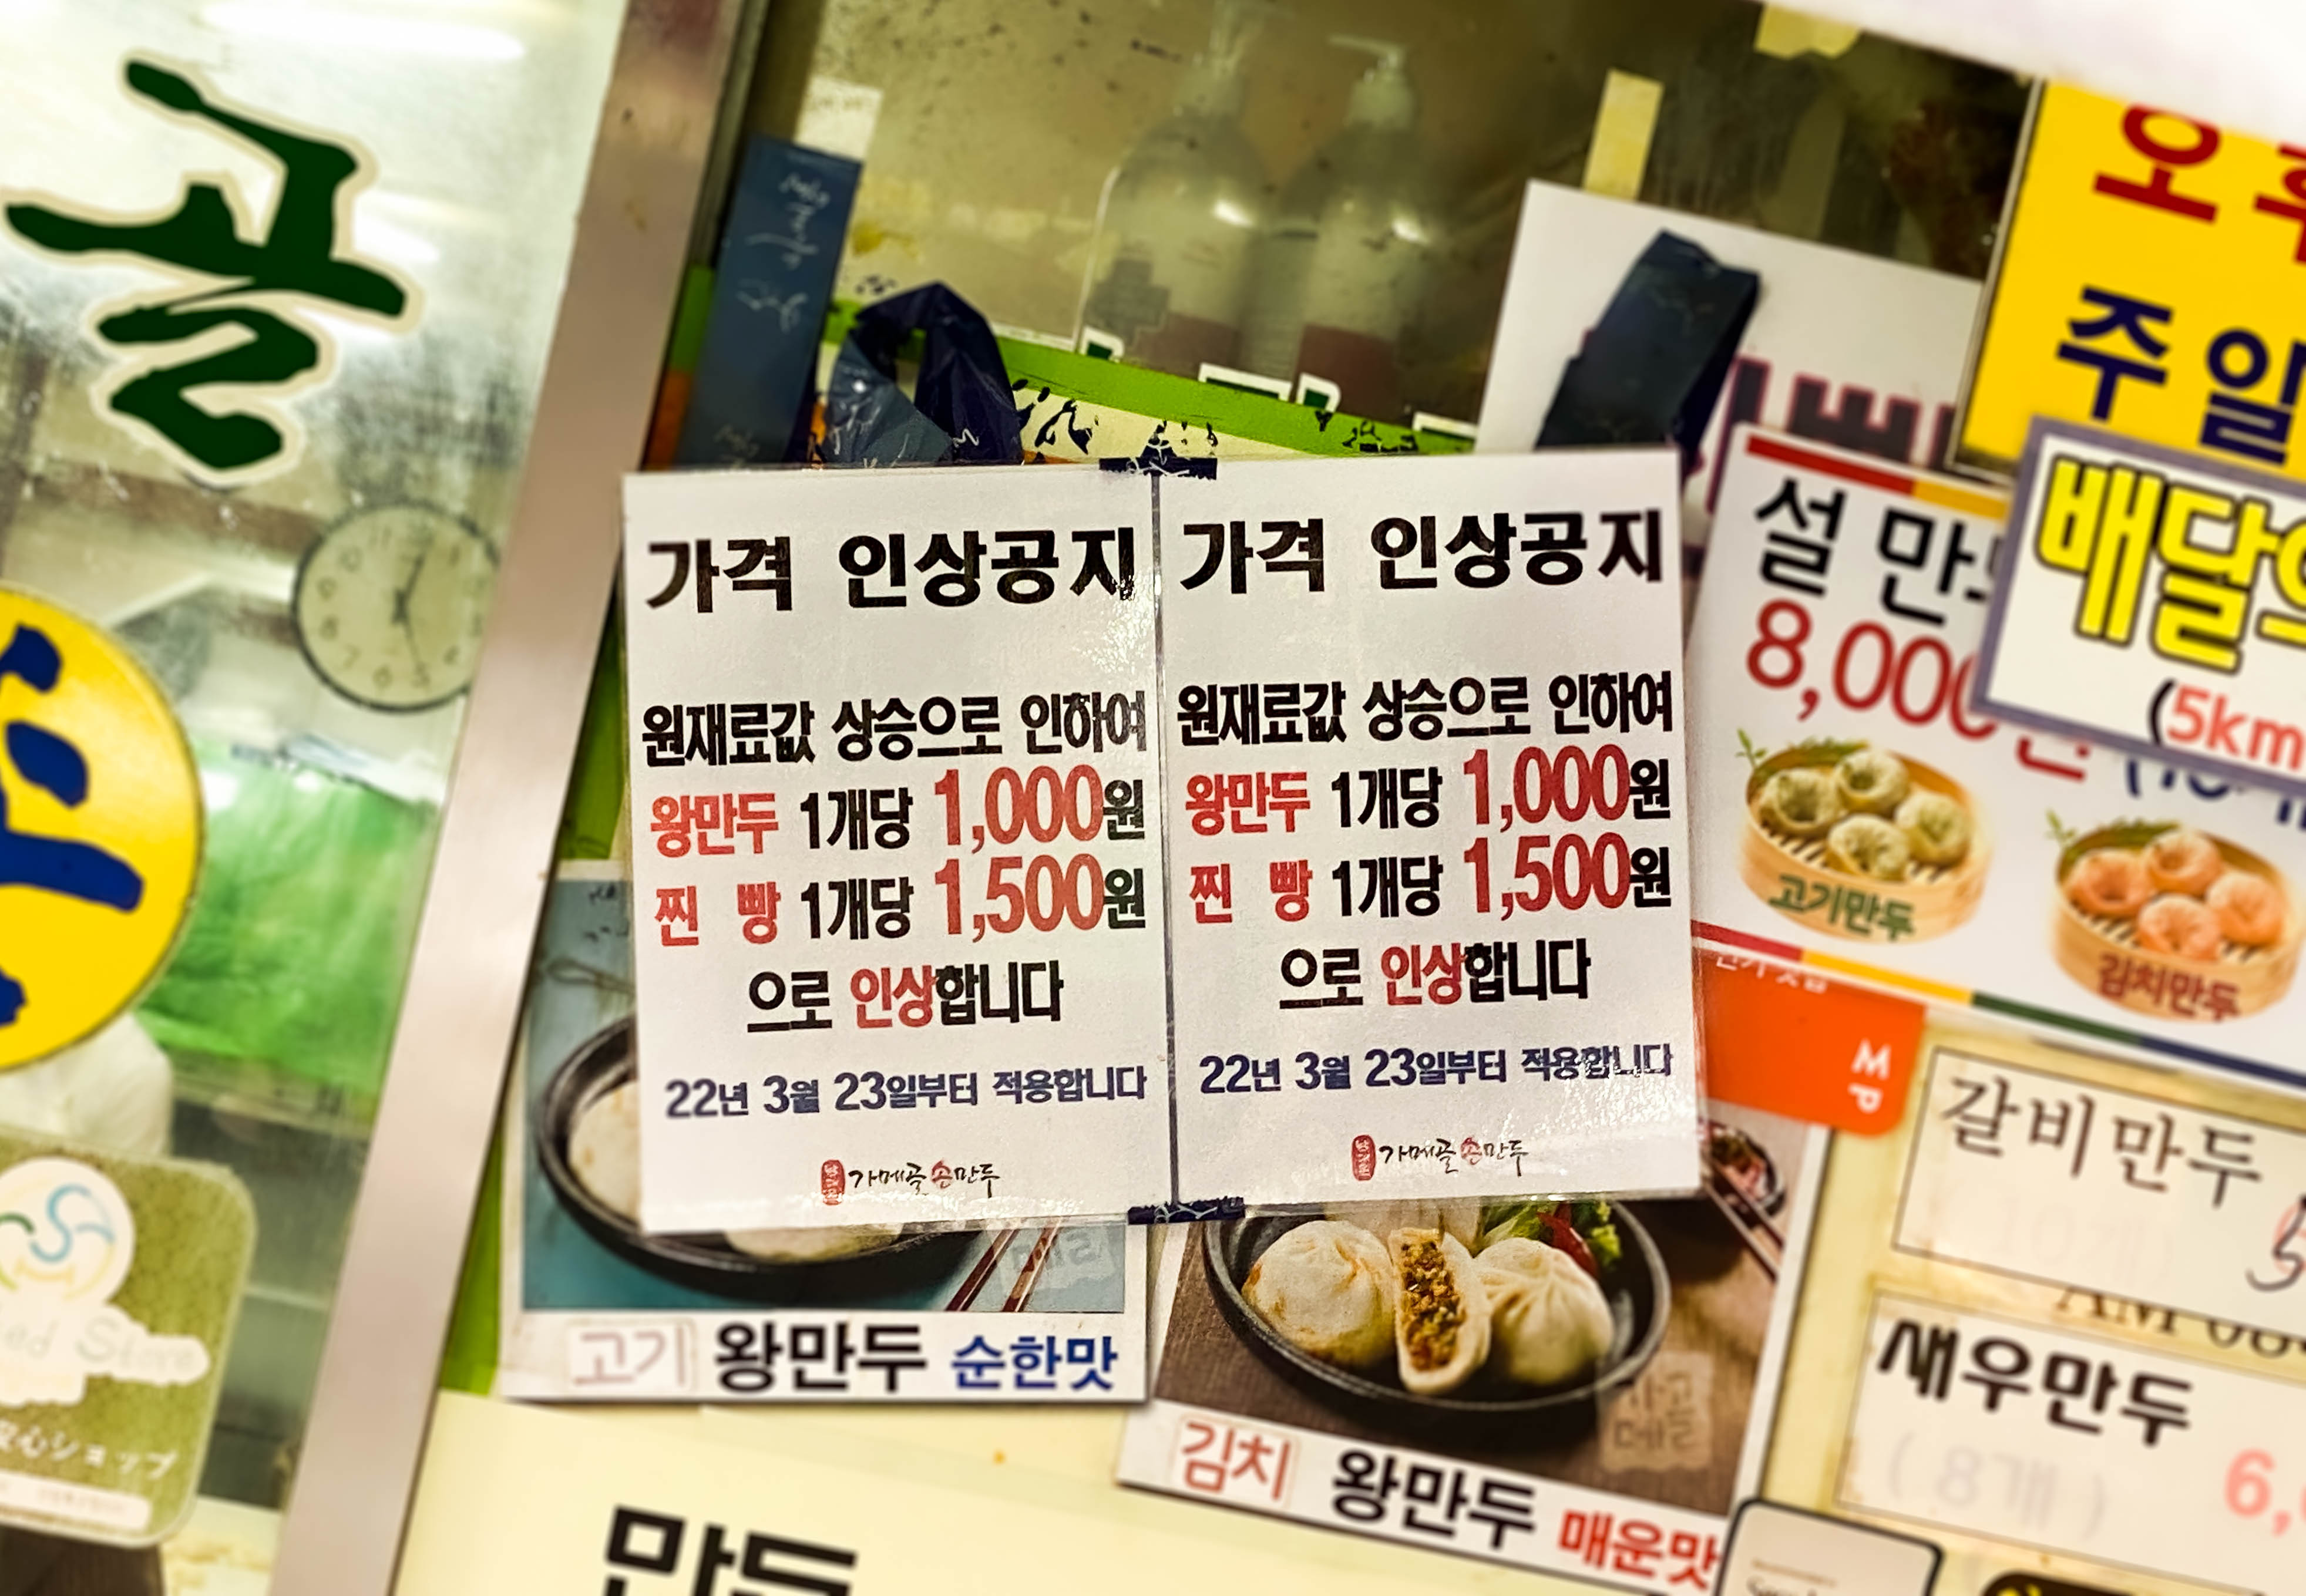 서울 만두 맛집